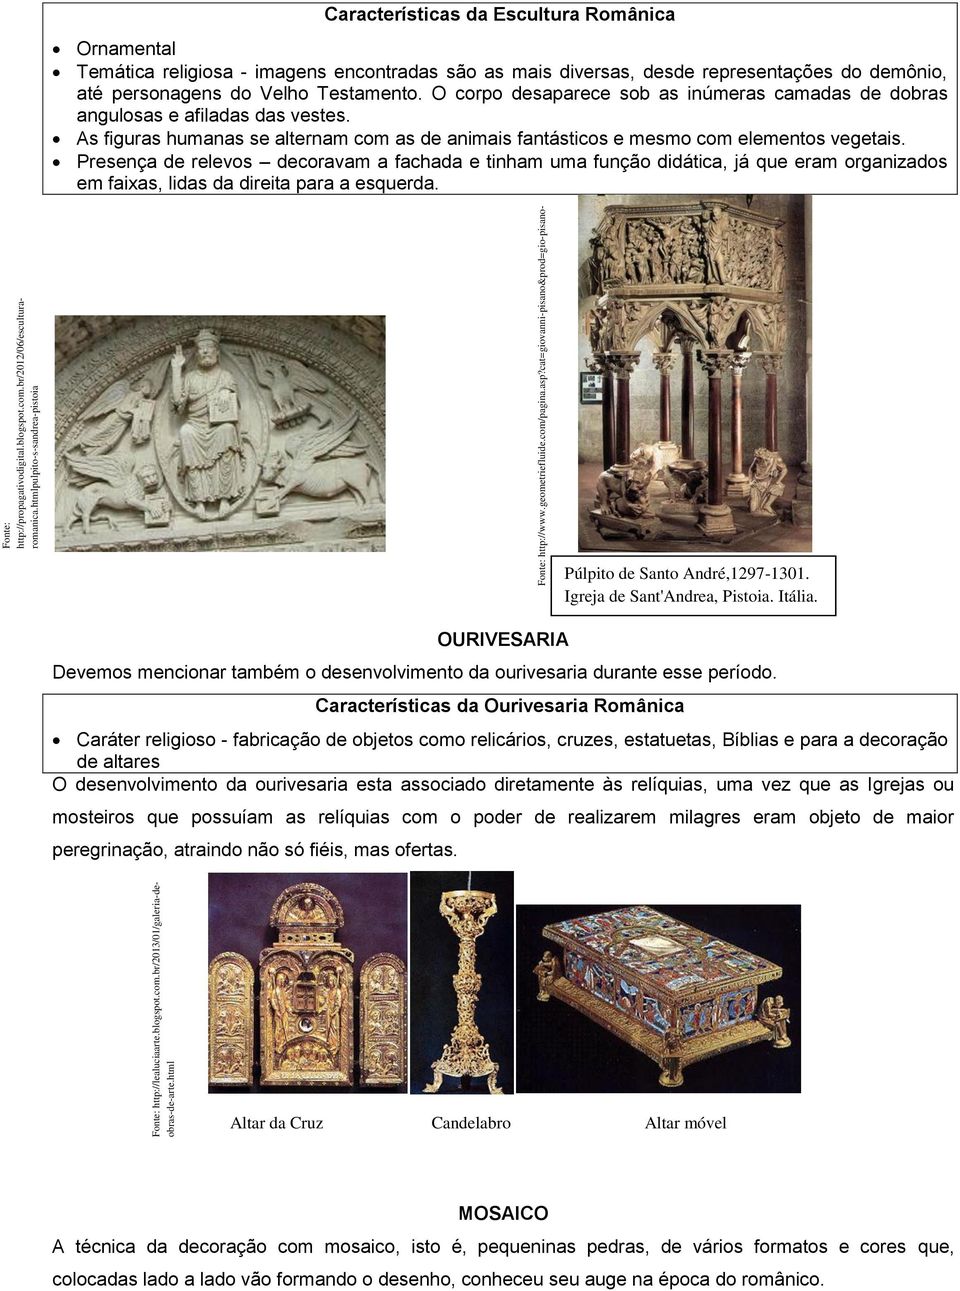 cat=giovanni-pisano&prod=gio-pisanopulpito-s-sandrea-pistoia Características da Escultura Românica Ornamental Temática religiosa - imagens encontradas são as mais diversas, desde representações do